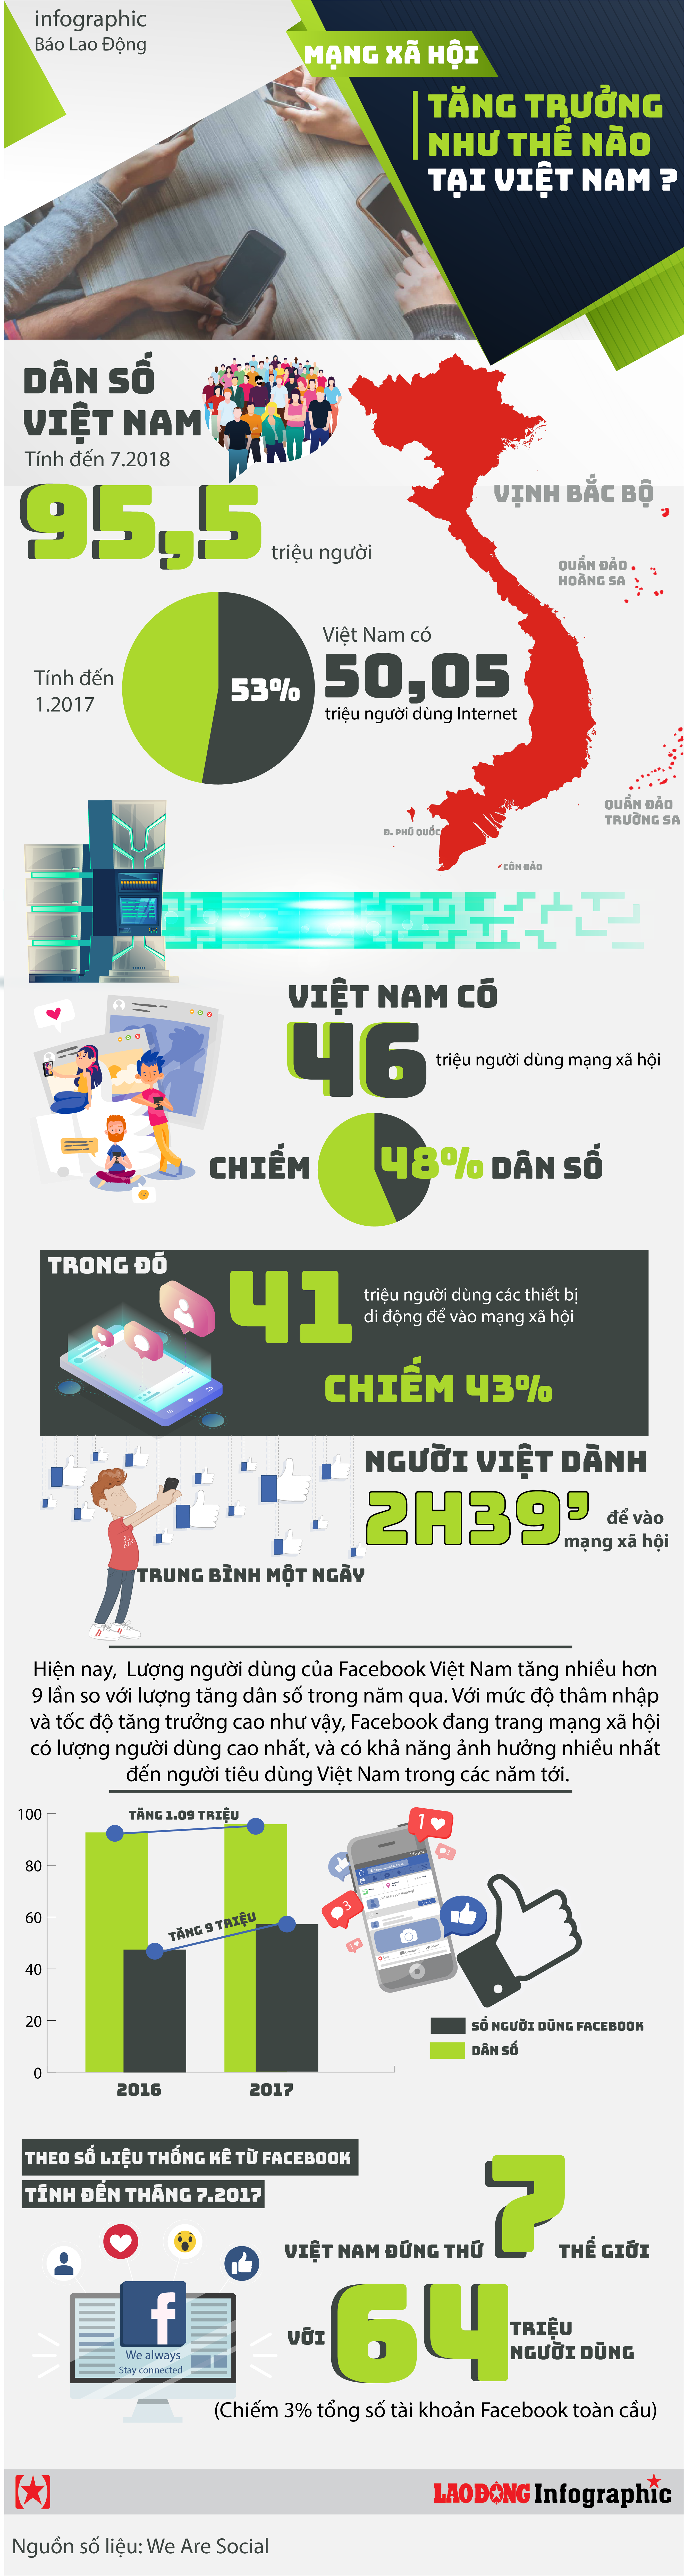 infographic toc do tang truong dang kinh ngac cua facebook va cac mang xa hoi tai viet nam